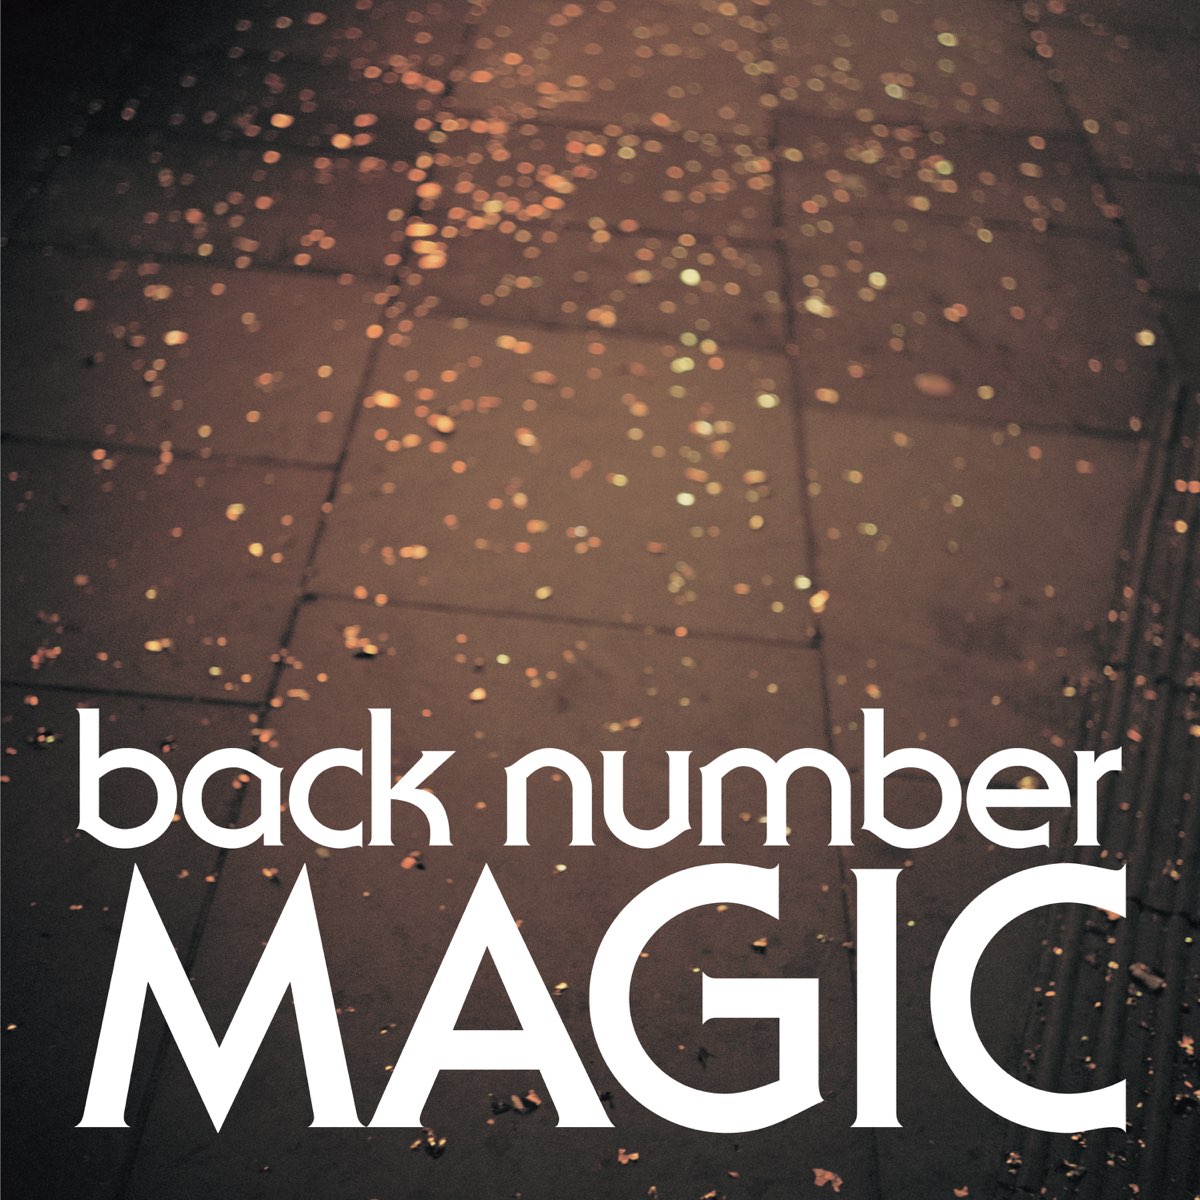 backnumber  MAGIC